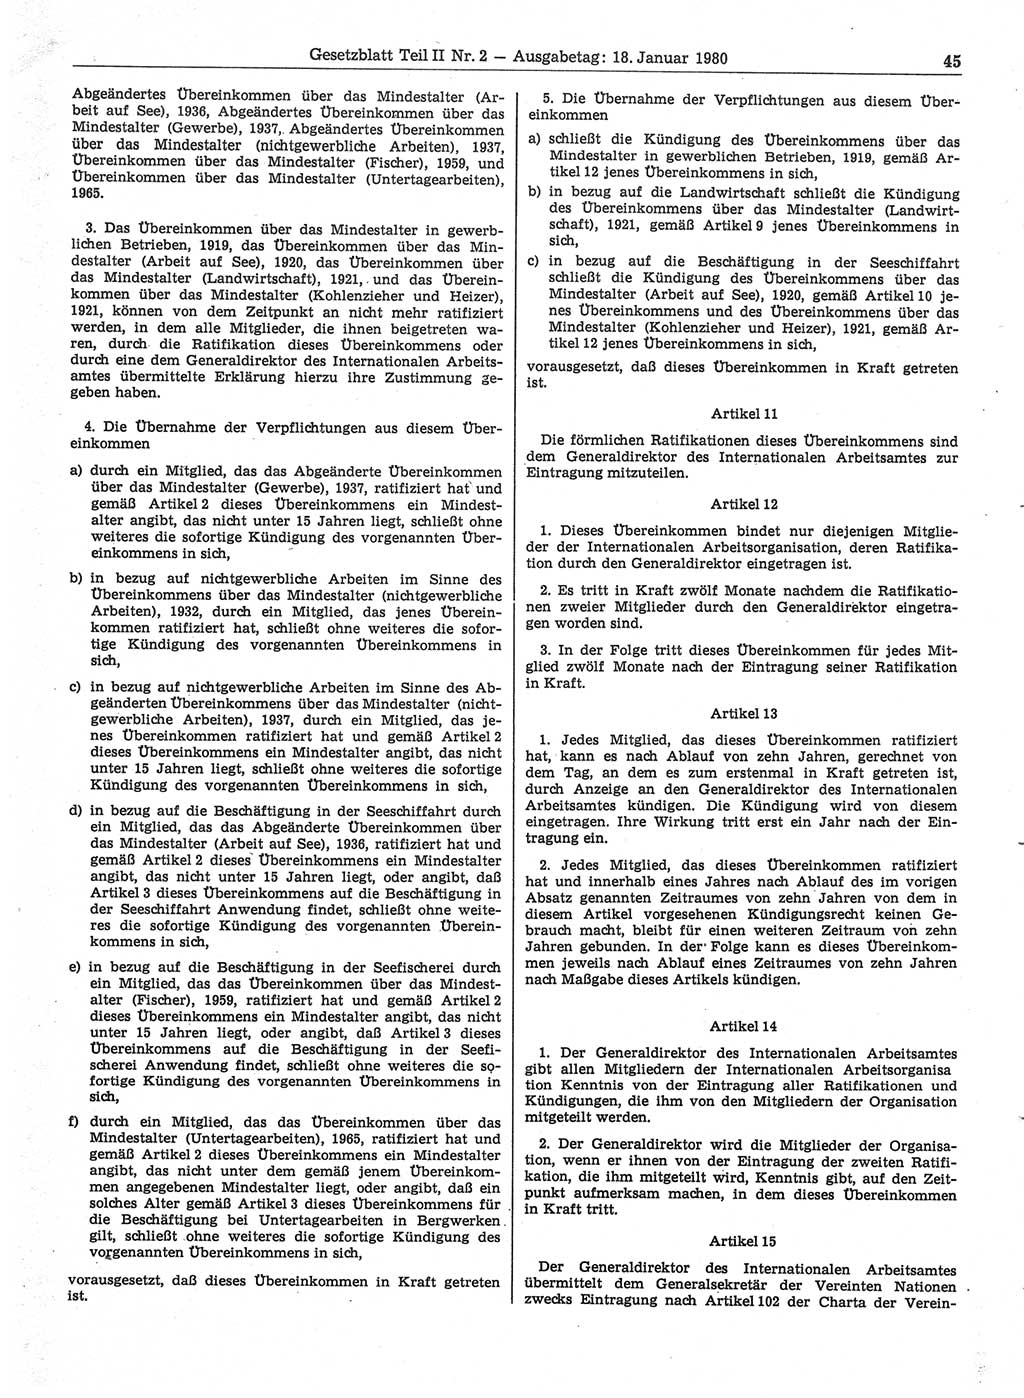 Gesetzblatt (GBl.) der Deutschen Demokratischen Republik (DDR) Teil ⅠⅠ 1980, Seite 45 (GBl. DDR ⅠⅠ 1980, S. 45)